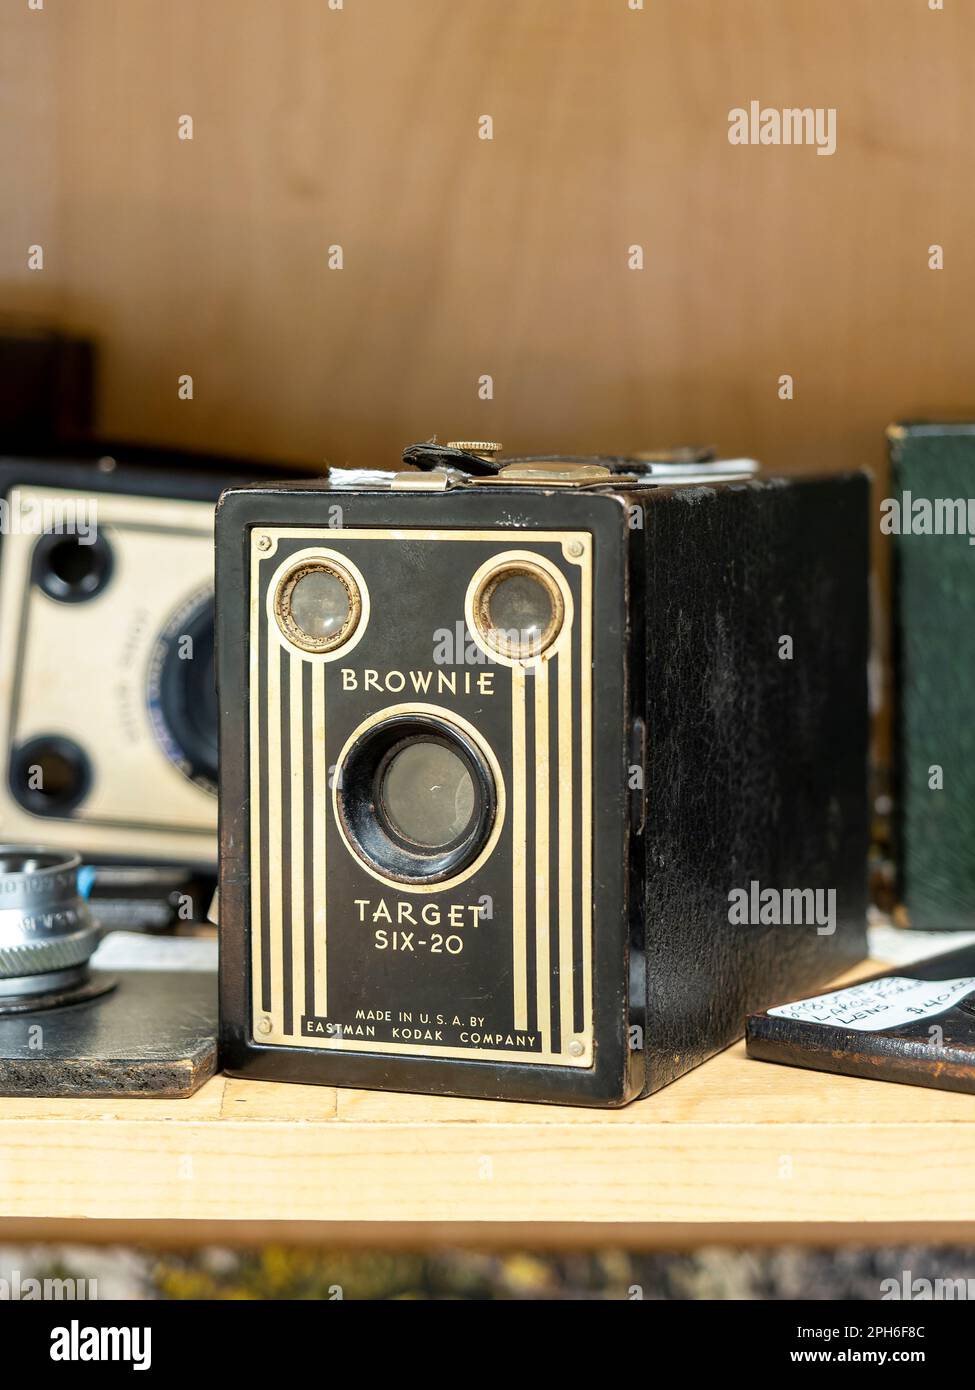 Brownie Target Six - 20 vintage o fotocamera d'epoca fatta da Eastman Kodak un favorito dei fotografi principianti negli anni '40 - '50 negli Stati Uniti. Foto Stock